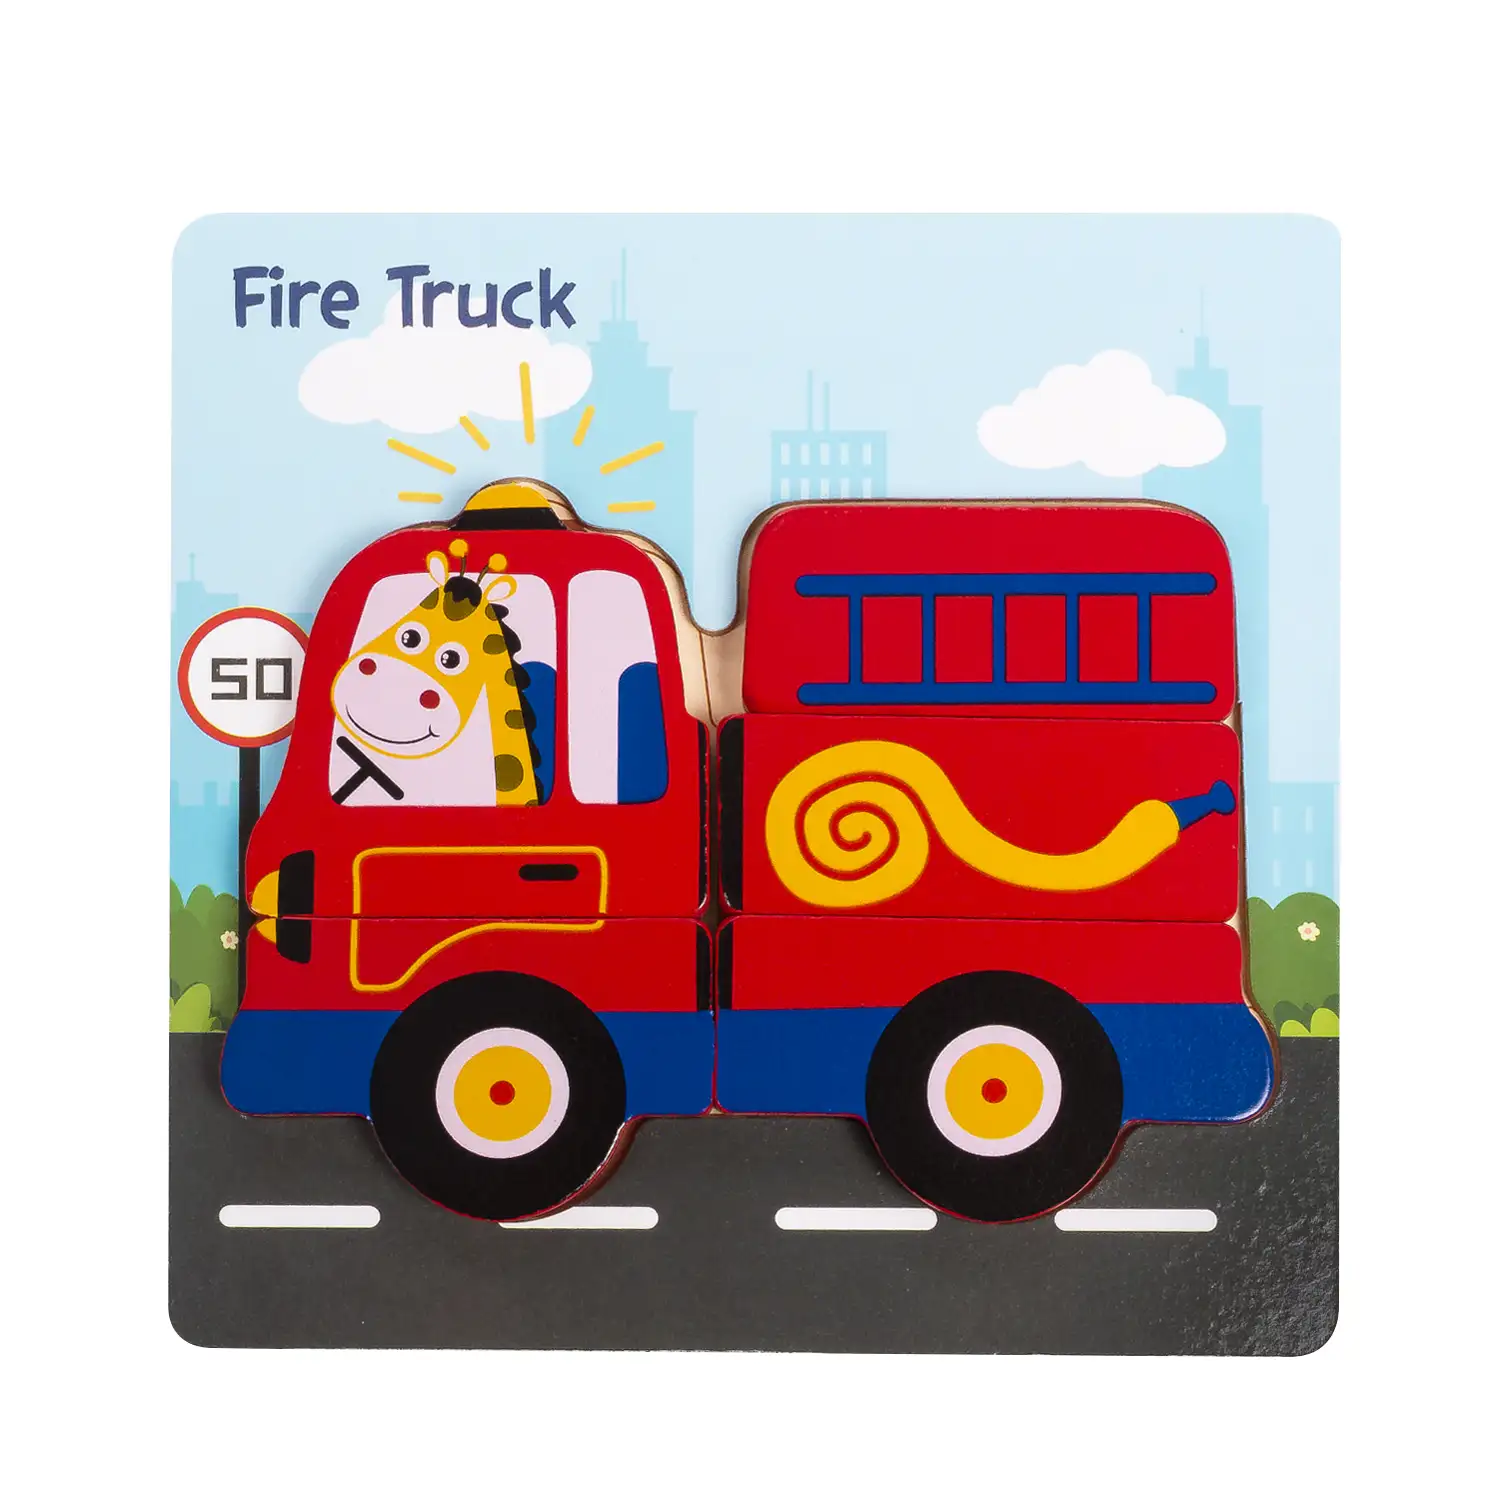 Puzle de madera para niños, de 5 piezas. Diseño camión de bomberos.